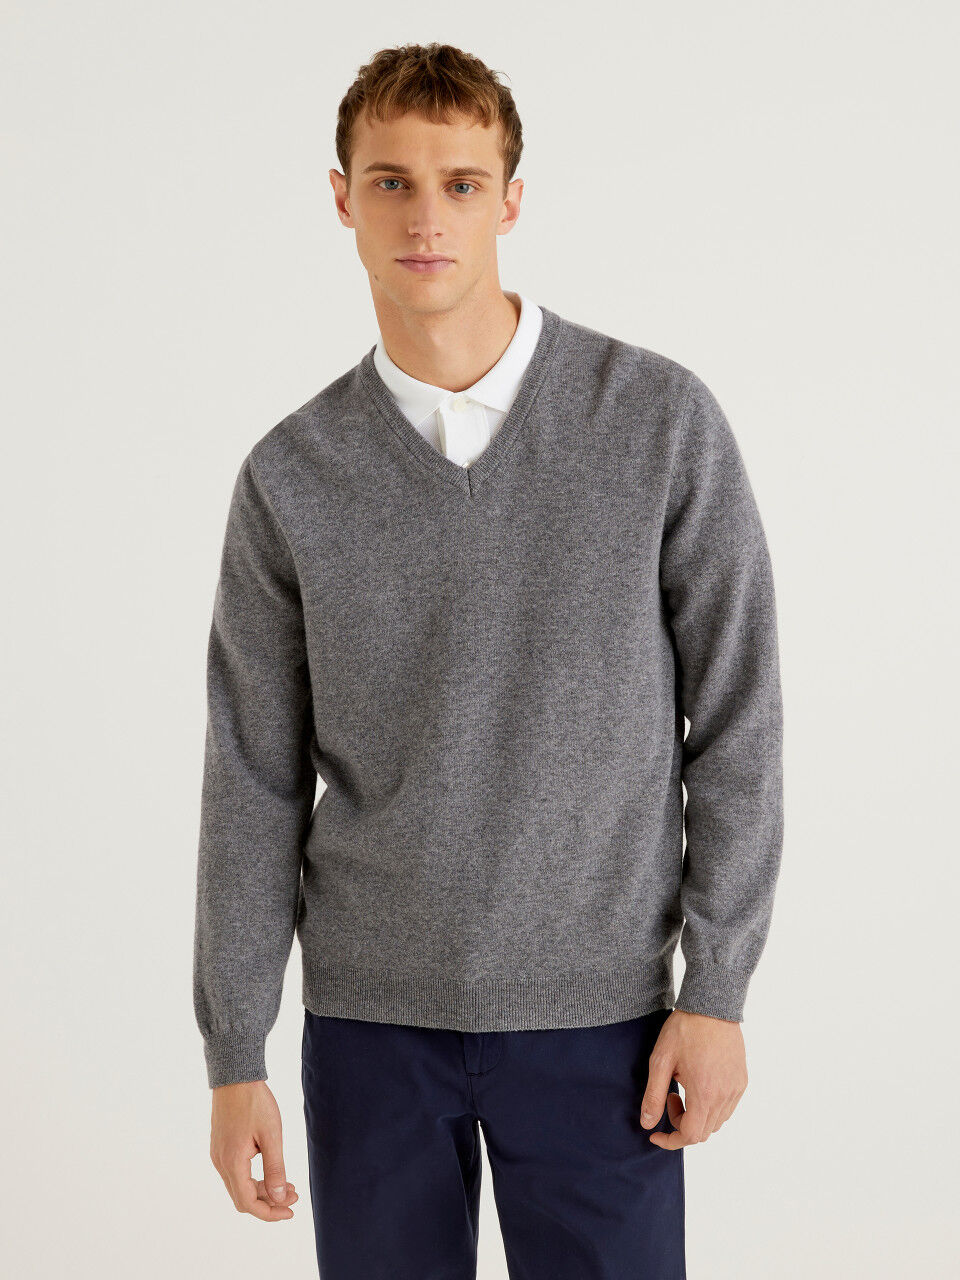 Dark gray V-neck sweater in pure Merino wool